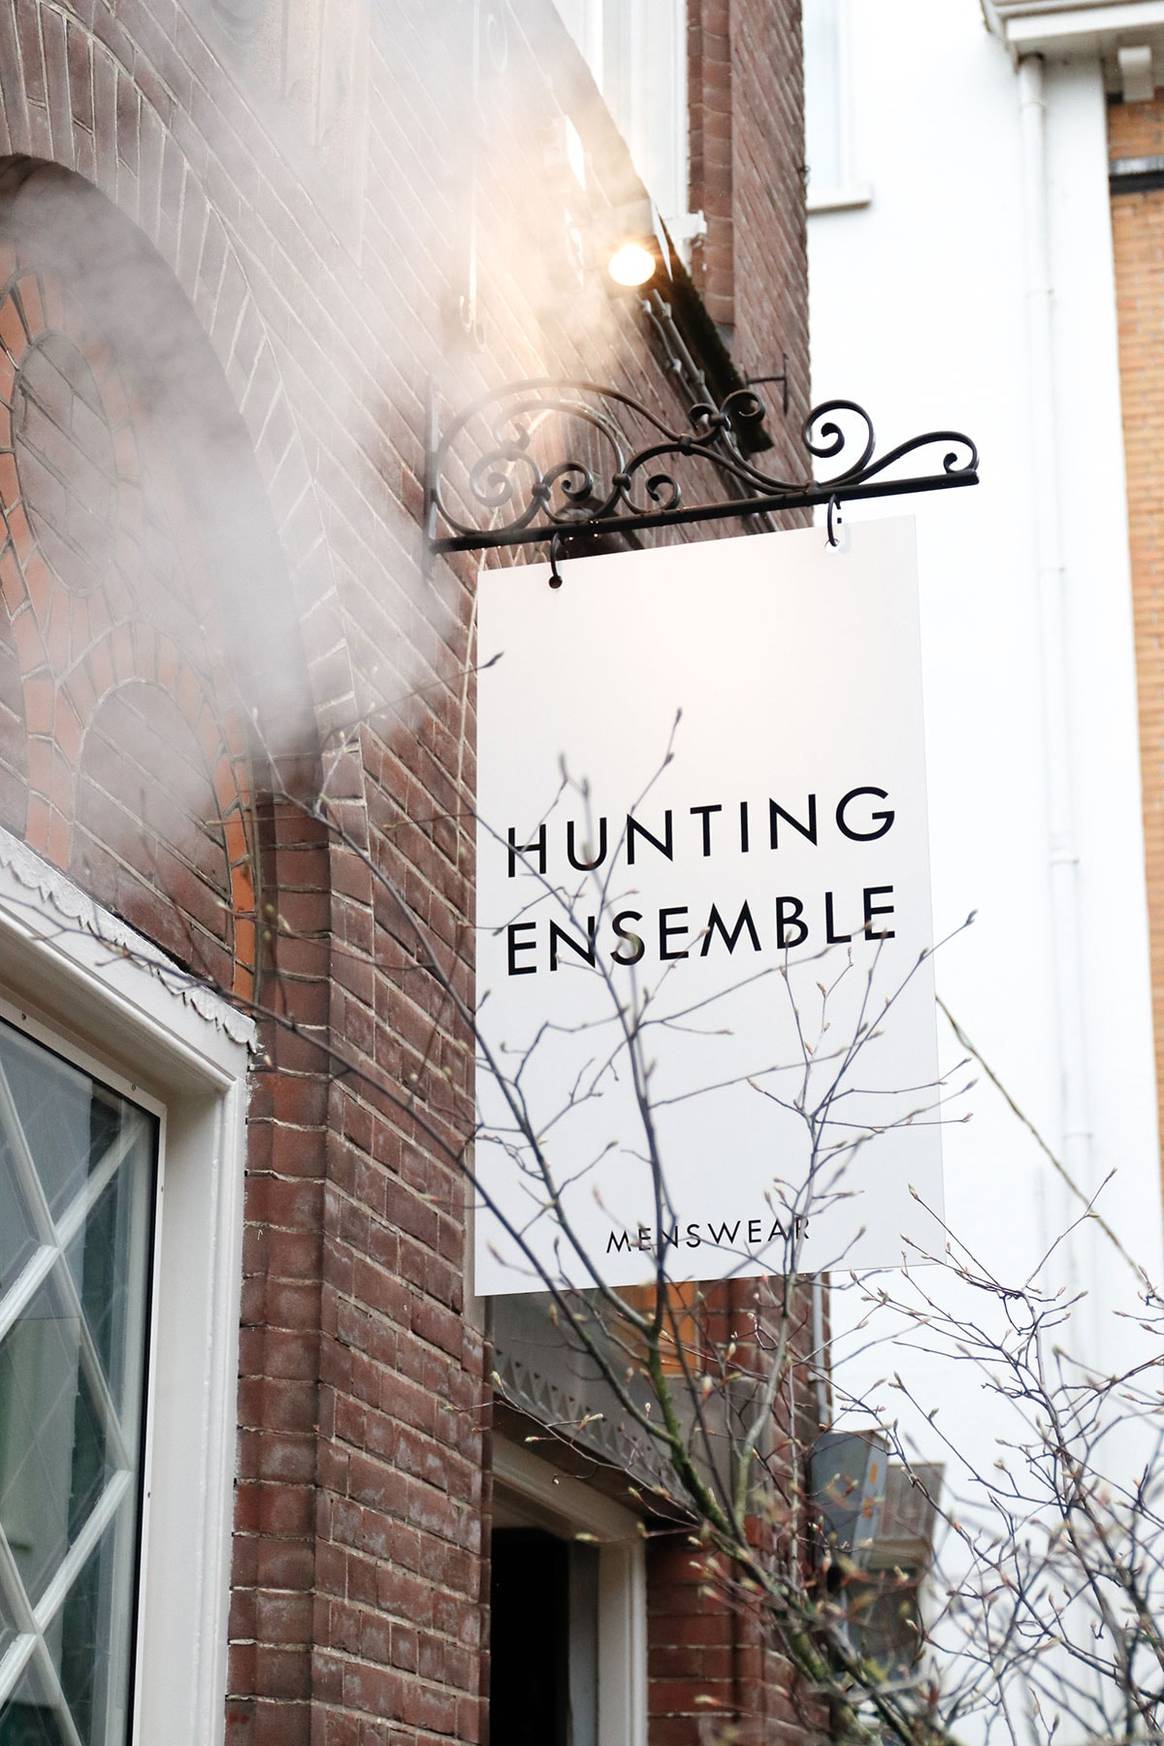 Binnenkijken bij de nieuwe winkel van The Hunting Ensemble